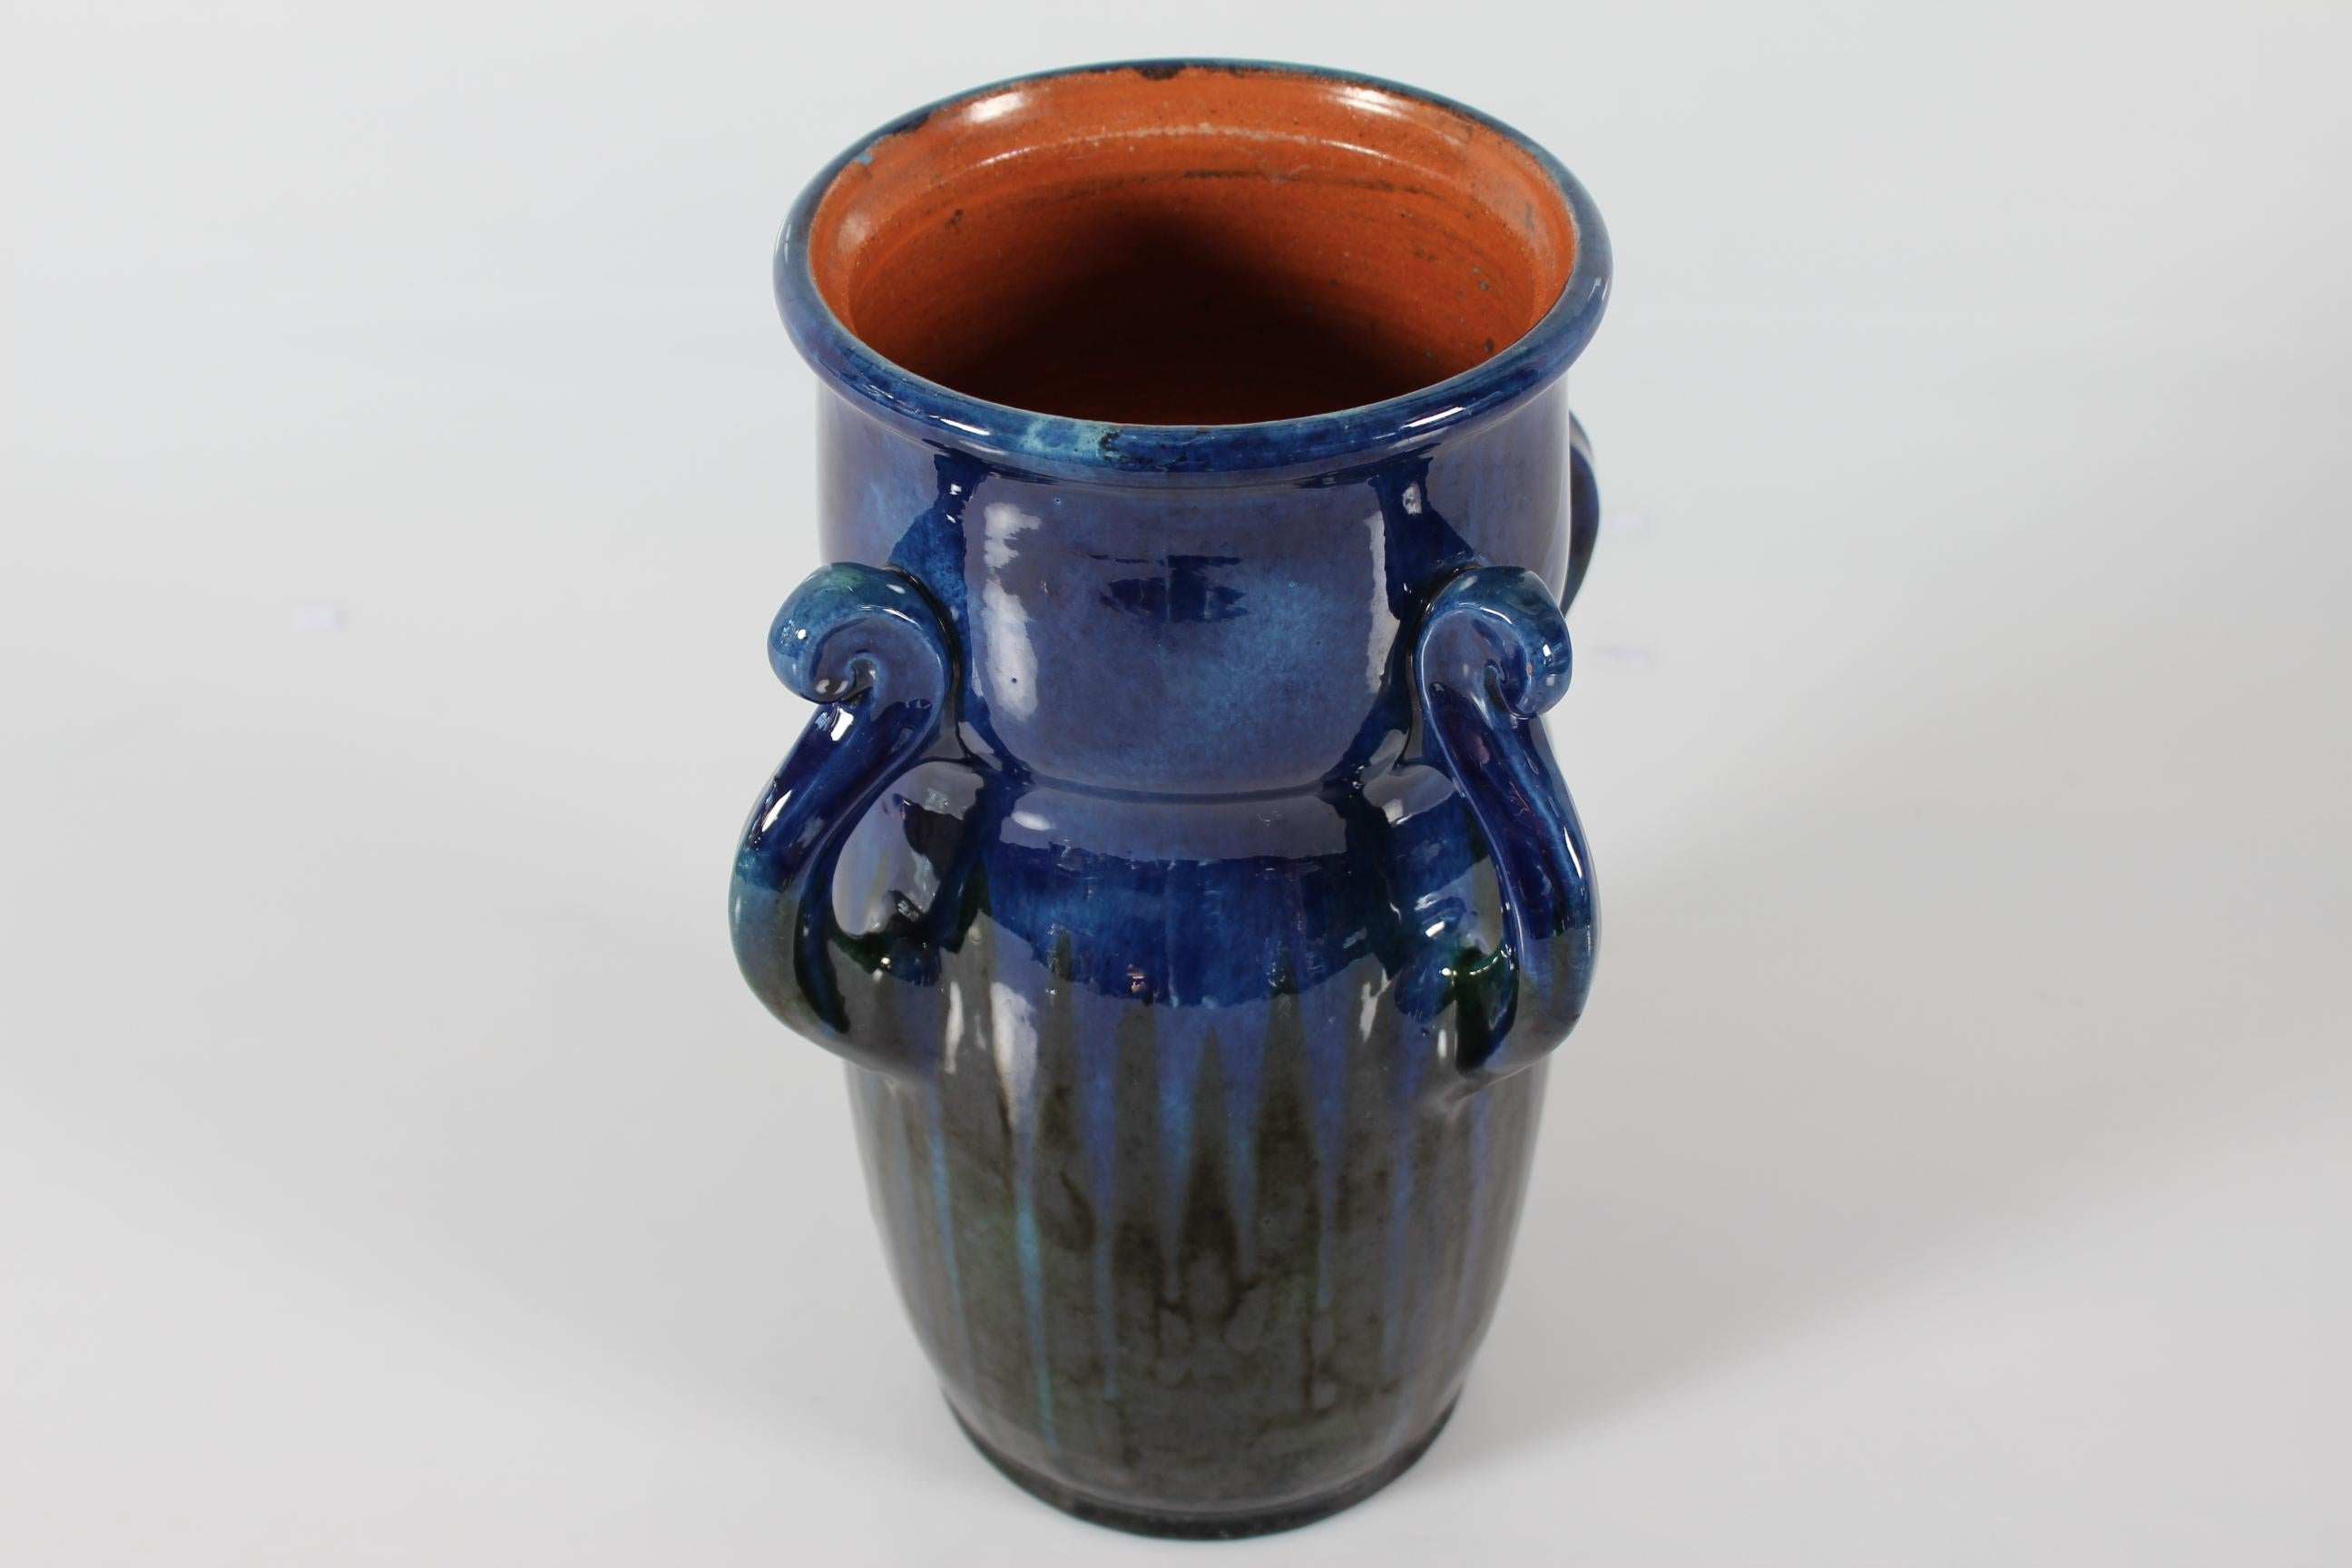 Vase sculptural en céramique réalisé par Herman A. Kähler ceramic works circa 1910
Le vase a des anses en forme de bras d'étoile de mer modelées, émaillées d'une glaçure brillante d'un bleu profond se transformant en rayures vertes vers le